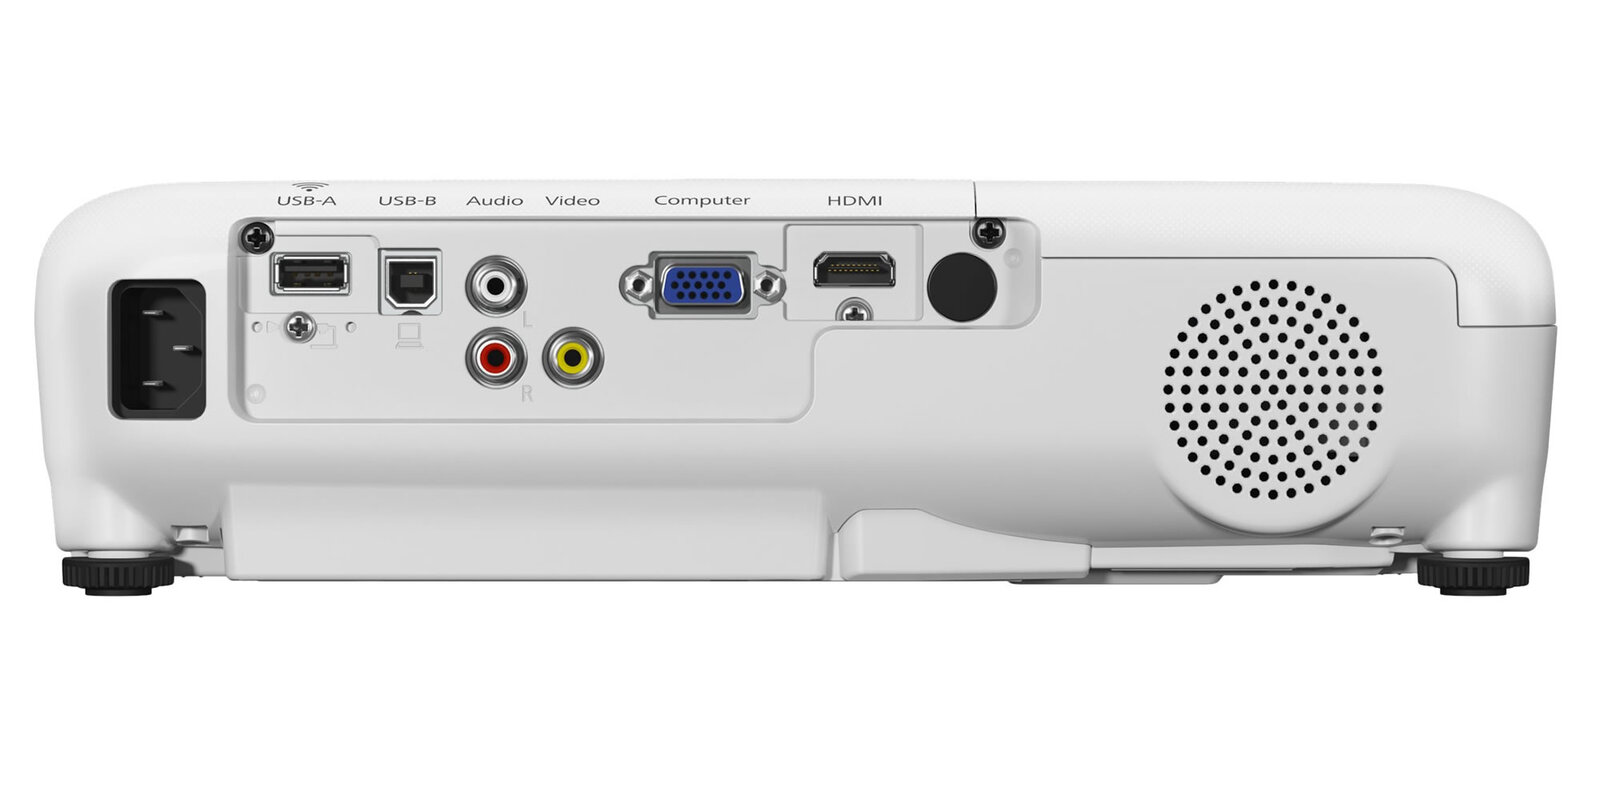 Epson EB-W42 1280x800 Projector HDMI VGA Composite 3600 Lumens w/Accessories Image 1